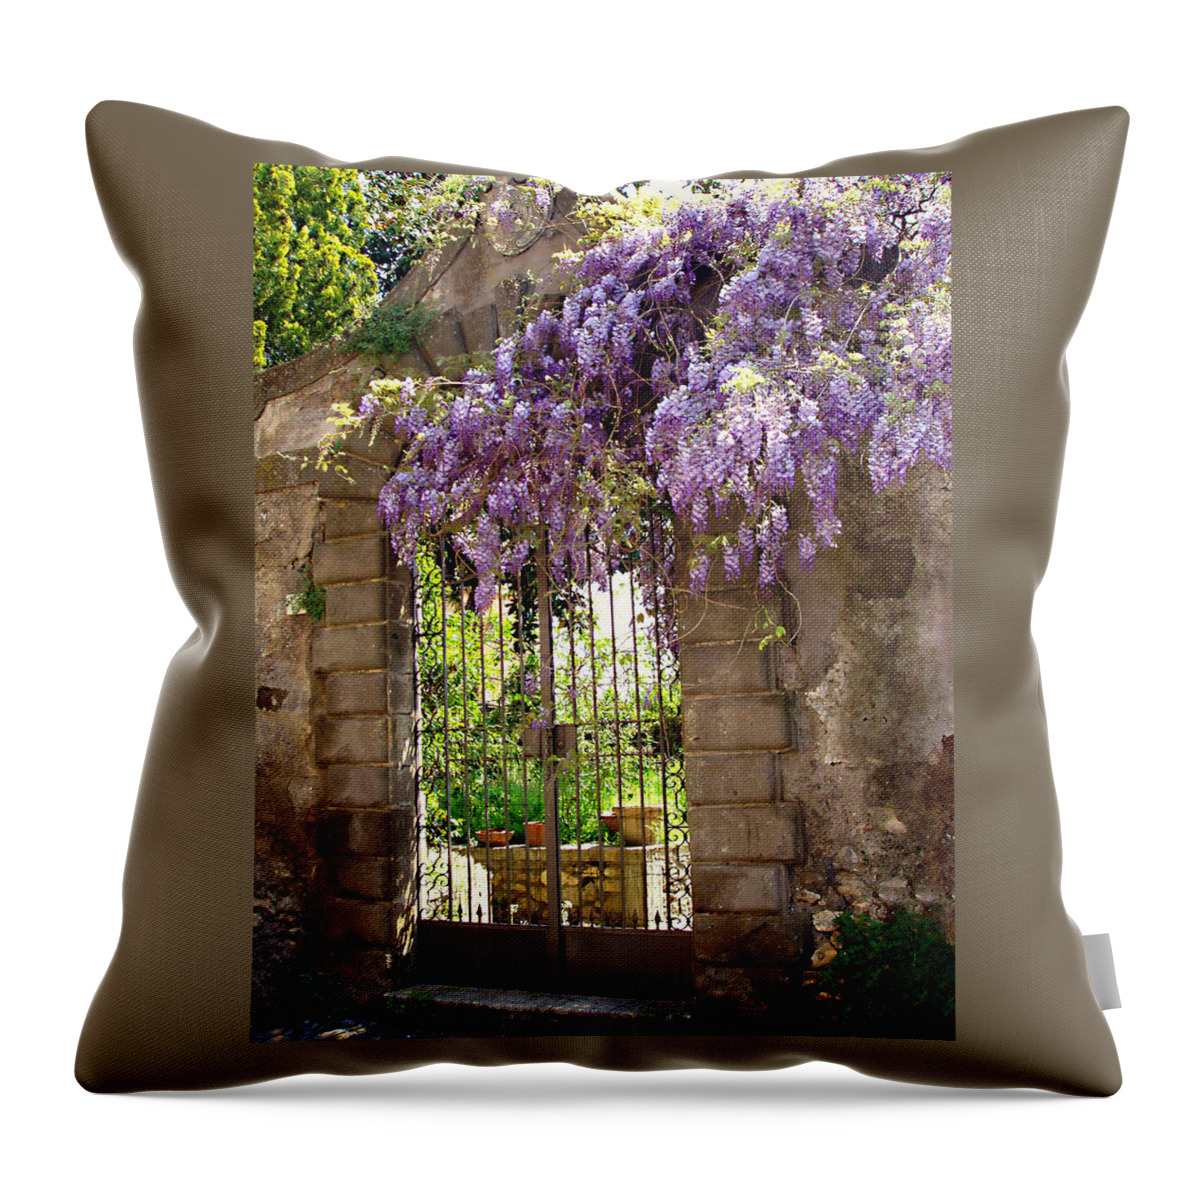 Garden Gate Throw Pillow featuring the photograph Garden Gate by Ellen Henneke